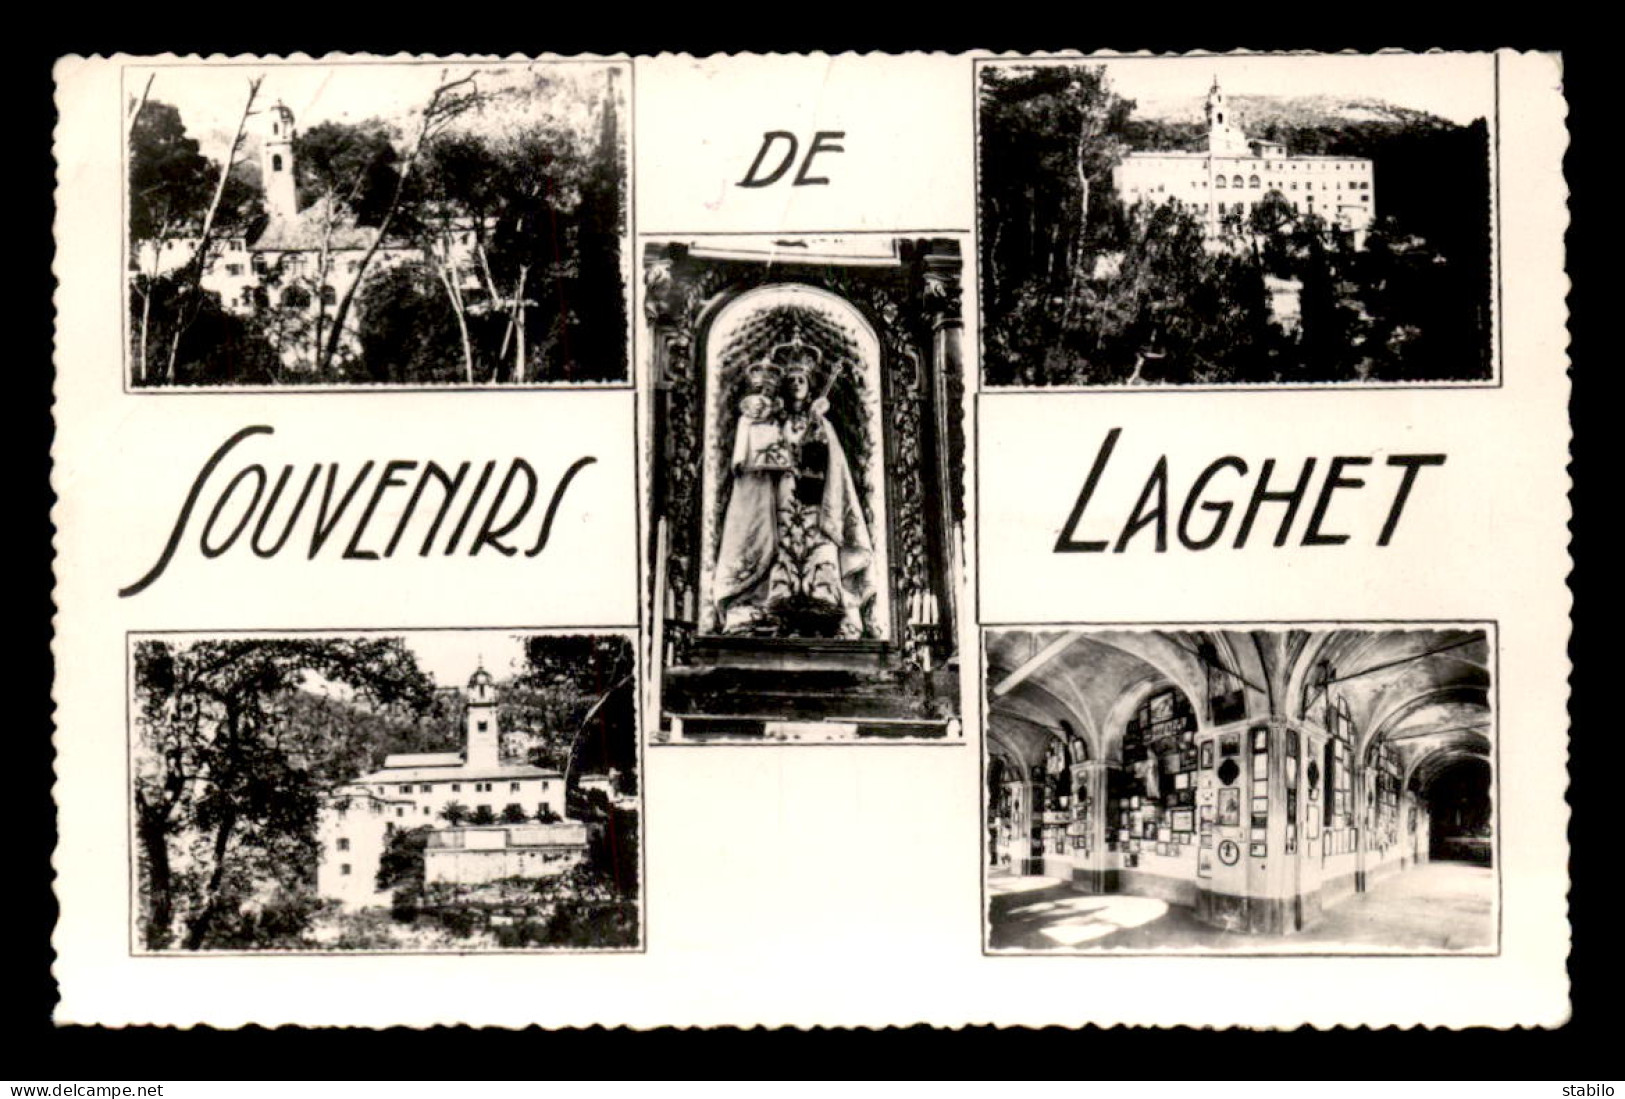 CARTE DE LAGHET (FRANCE) TAXEE AVEC 1 TIMBRE TAXE DE 10 F - CACHET DE GABES DU 22.10.1954 - Tunisia